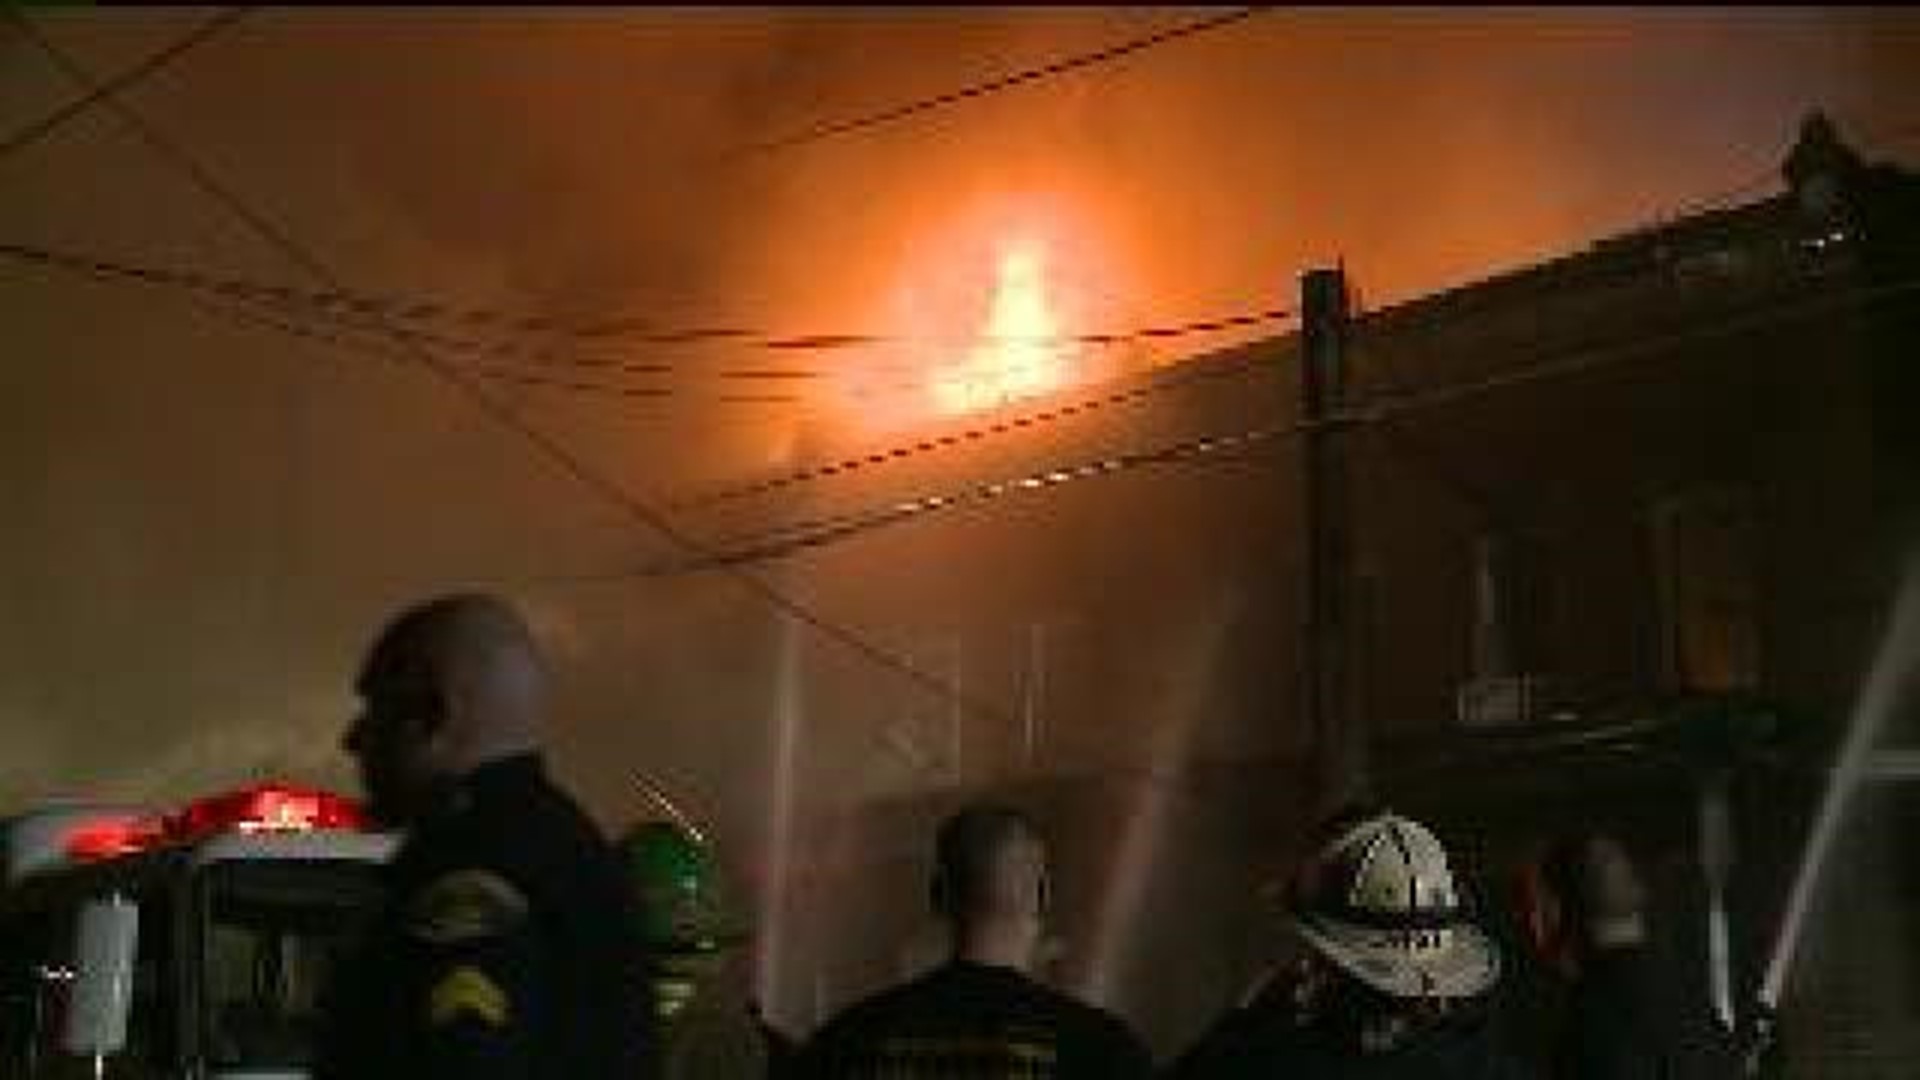 Victims Struggle After Devastating East Stroudsburg Blaze